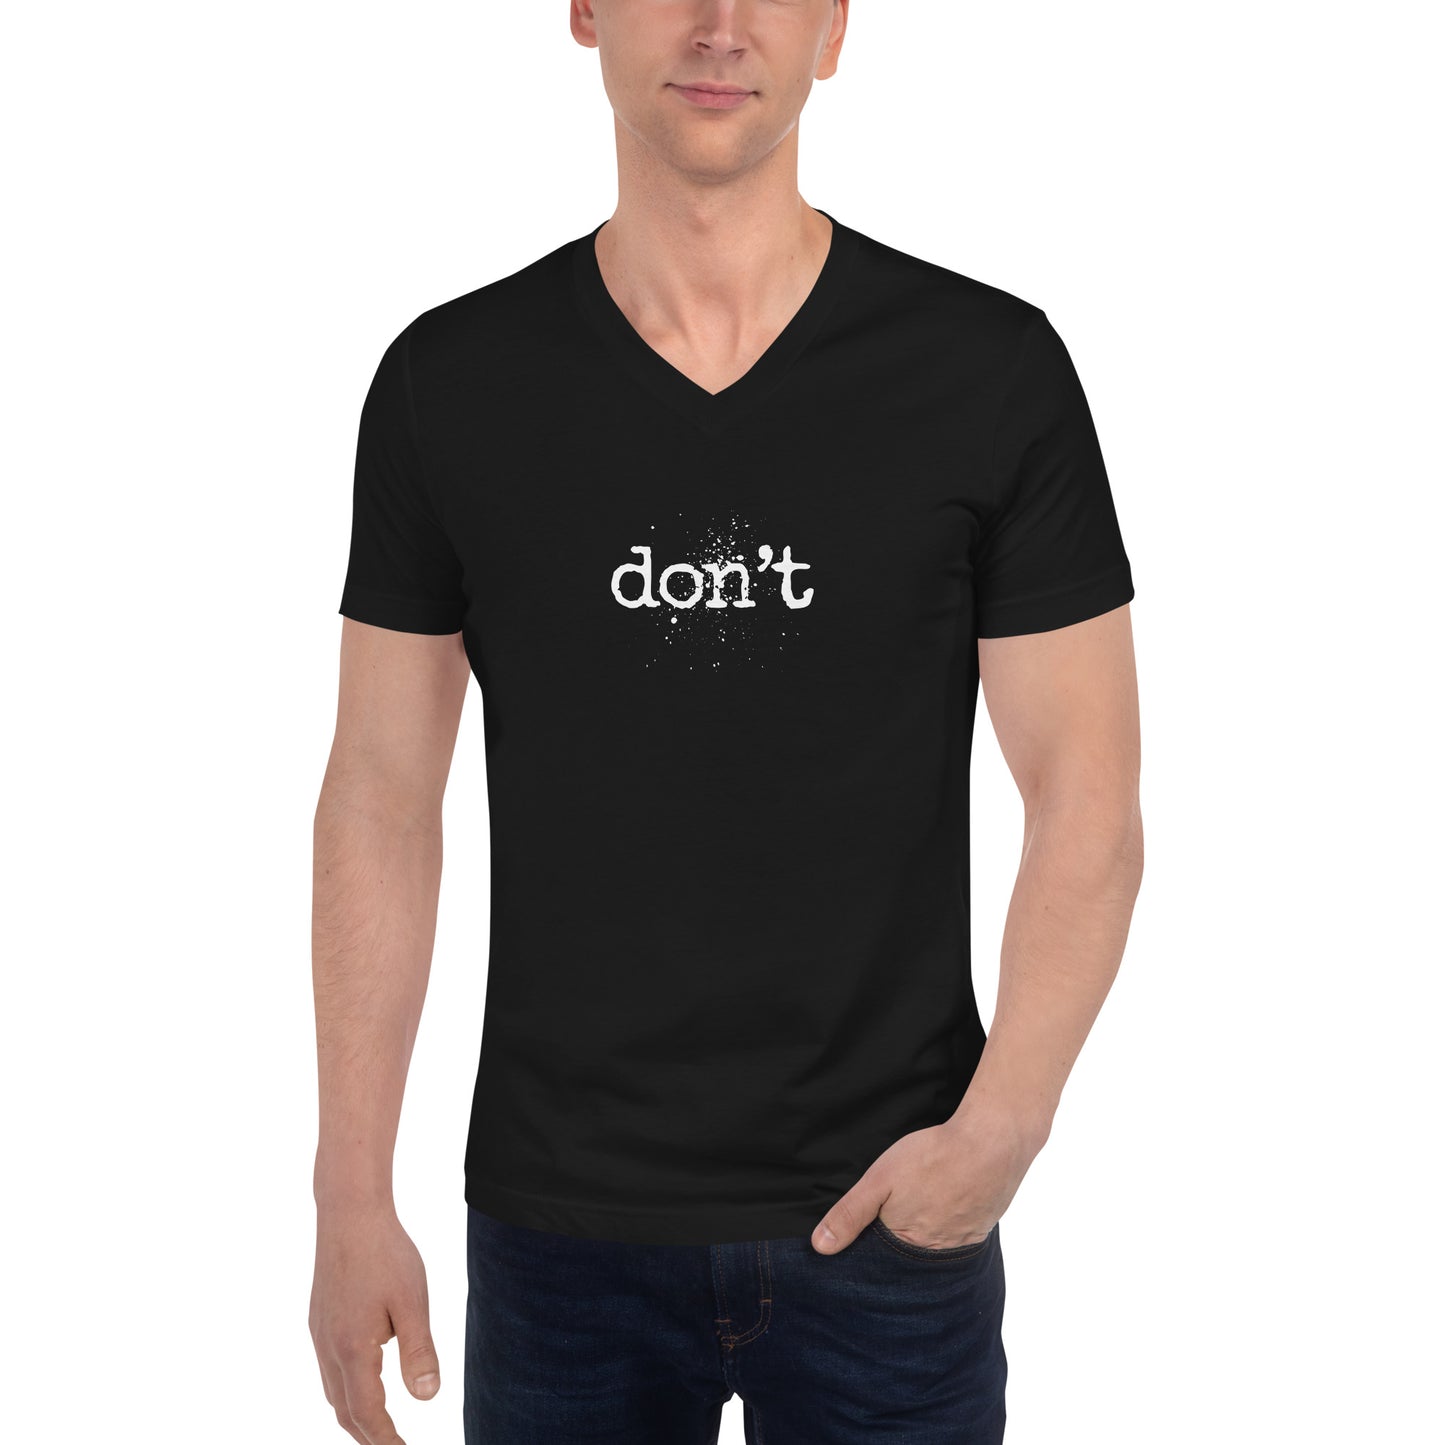 don't. - Unisex Short Sleeve V-Neck T-Shirt